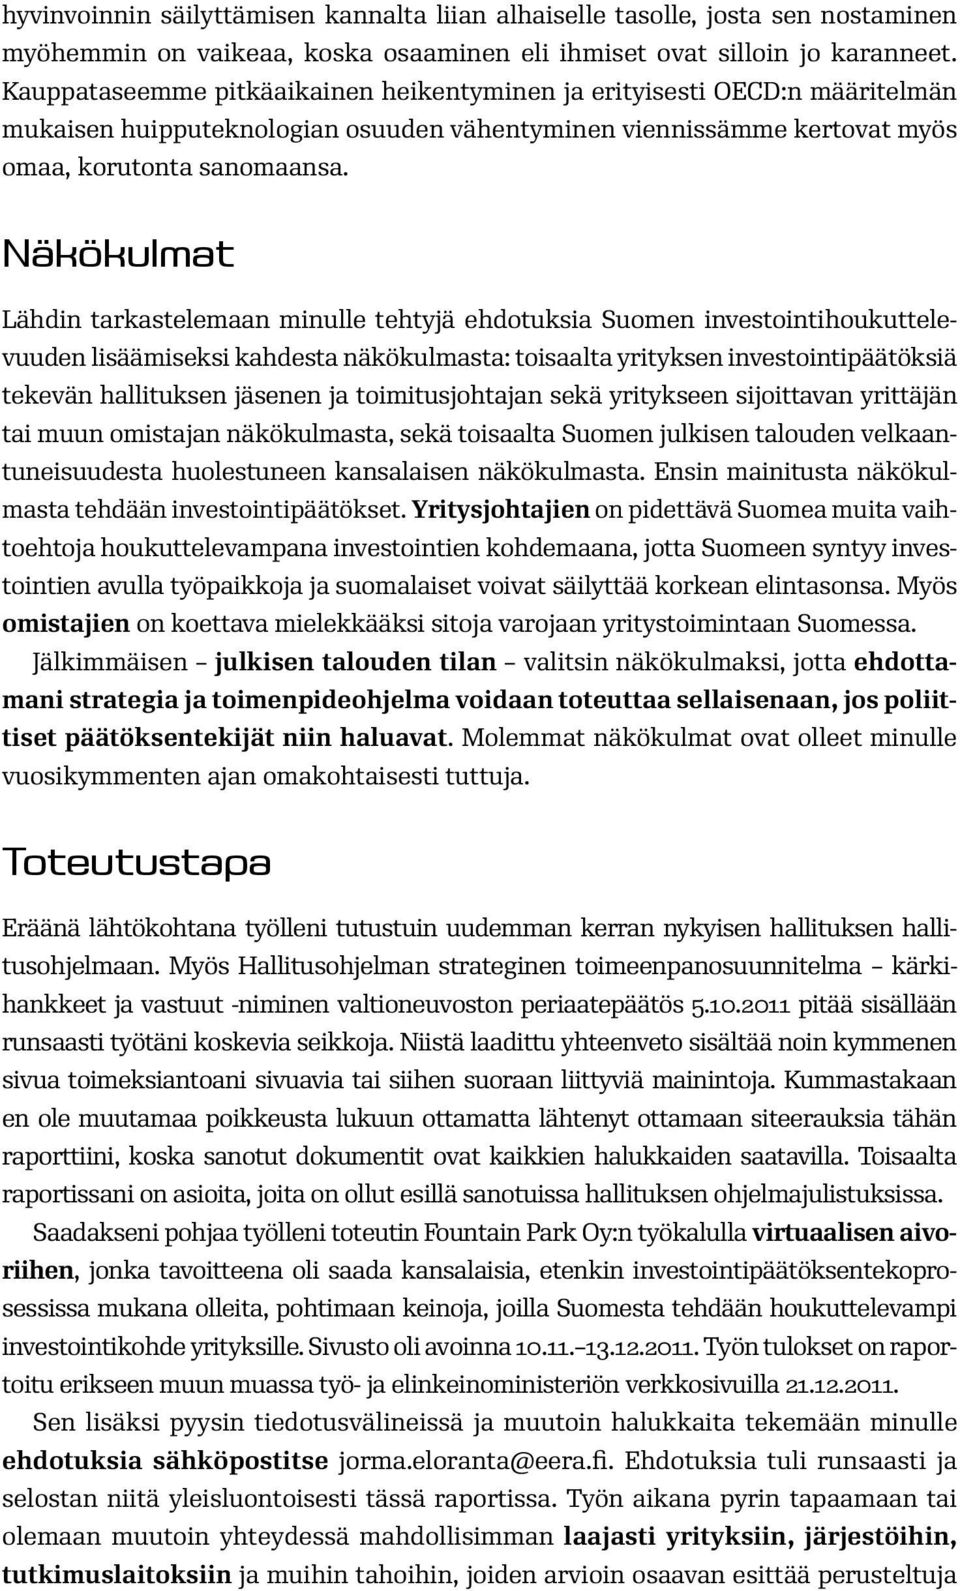 Näkökulmat Lähdin tarkastelemaan minulle tehtyjä ehdotuksia Suomen investointihoukuttelevuuden lisäämiseksi kahdesta näkökulmasta: toisaalta yrityksen investointipäätöksiä tekevän hallituksen jäsenen